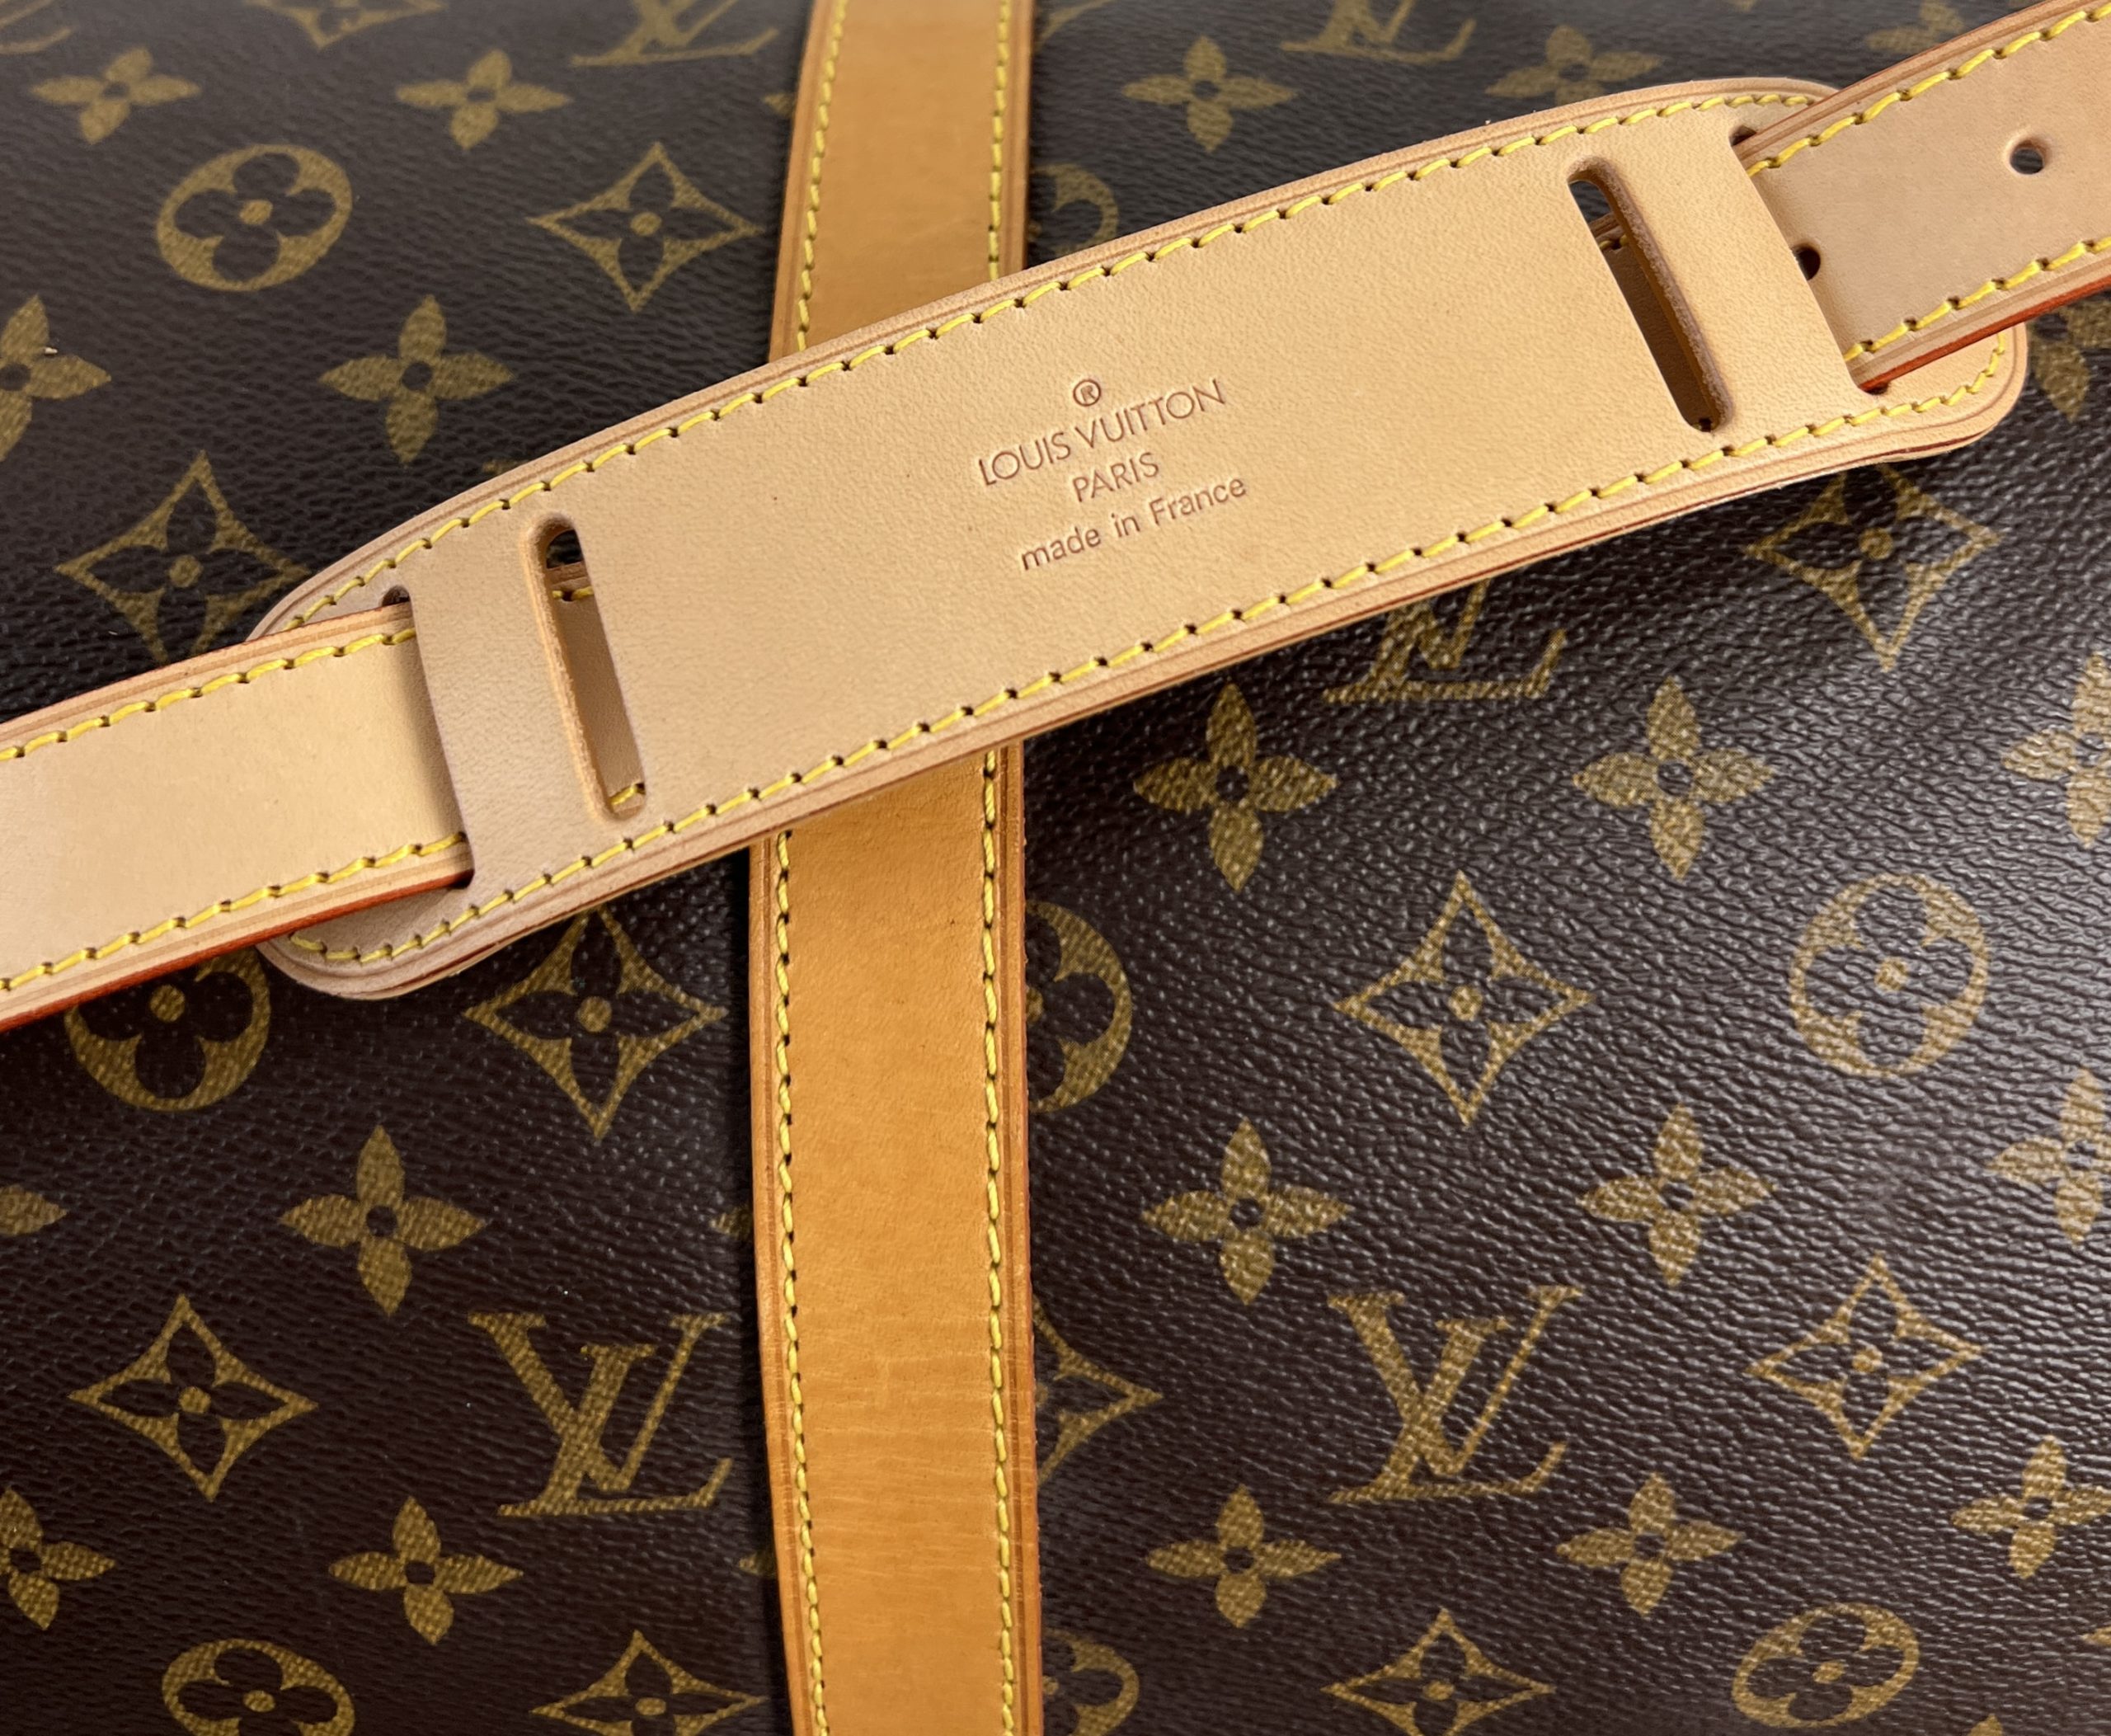 Louis Vuitton Larry Macassar LV Monogram Briefcase M92292  New in Box   eBay